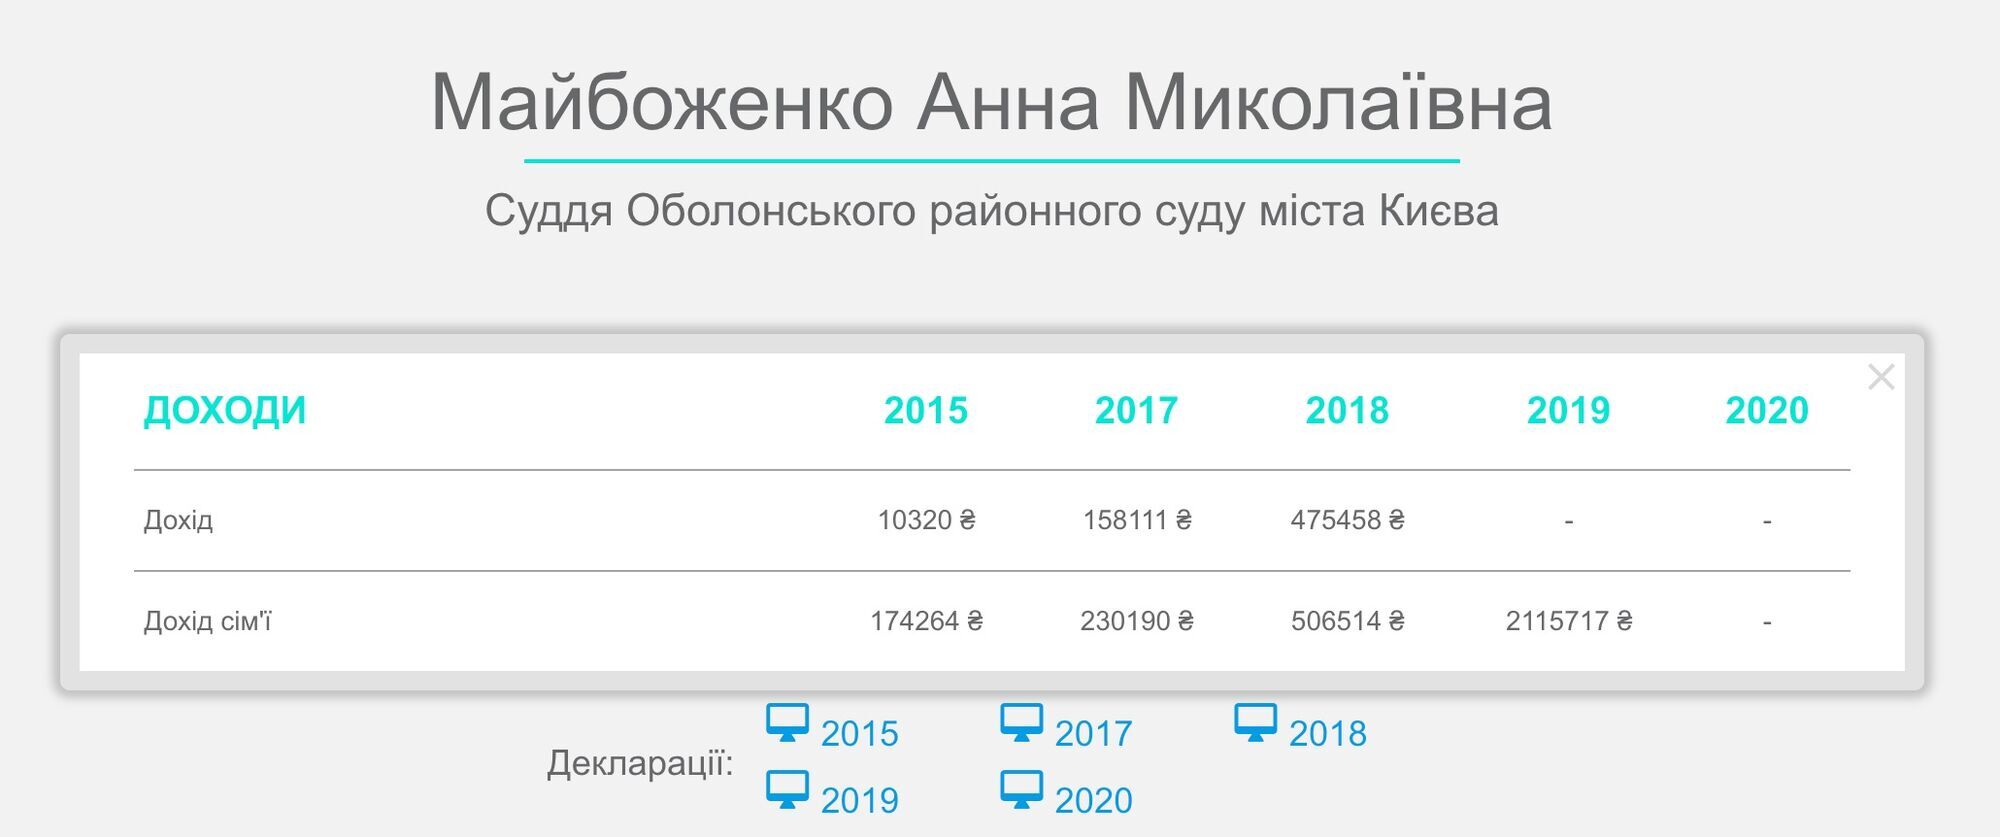 Доходы супругов Майбоженко-Дыба резко выросли в 2019 году